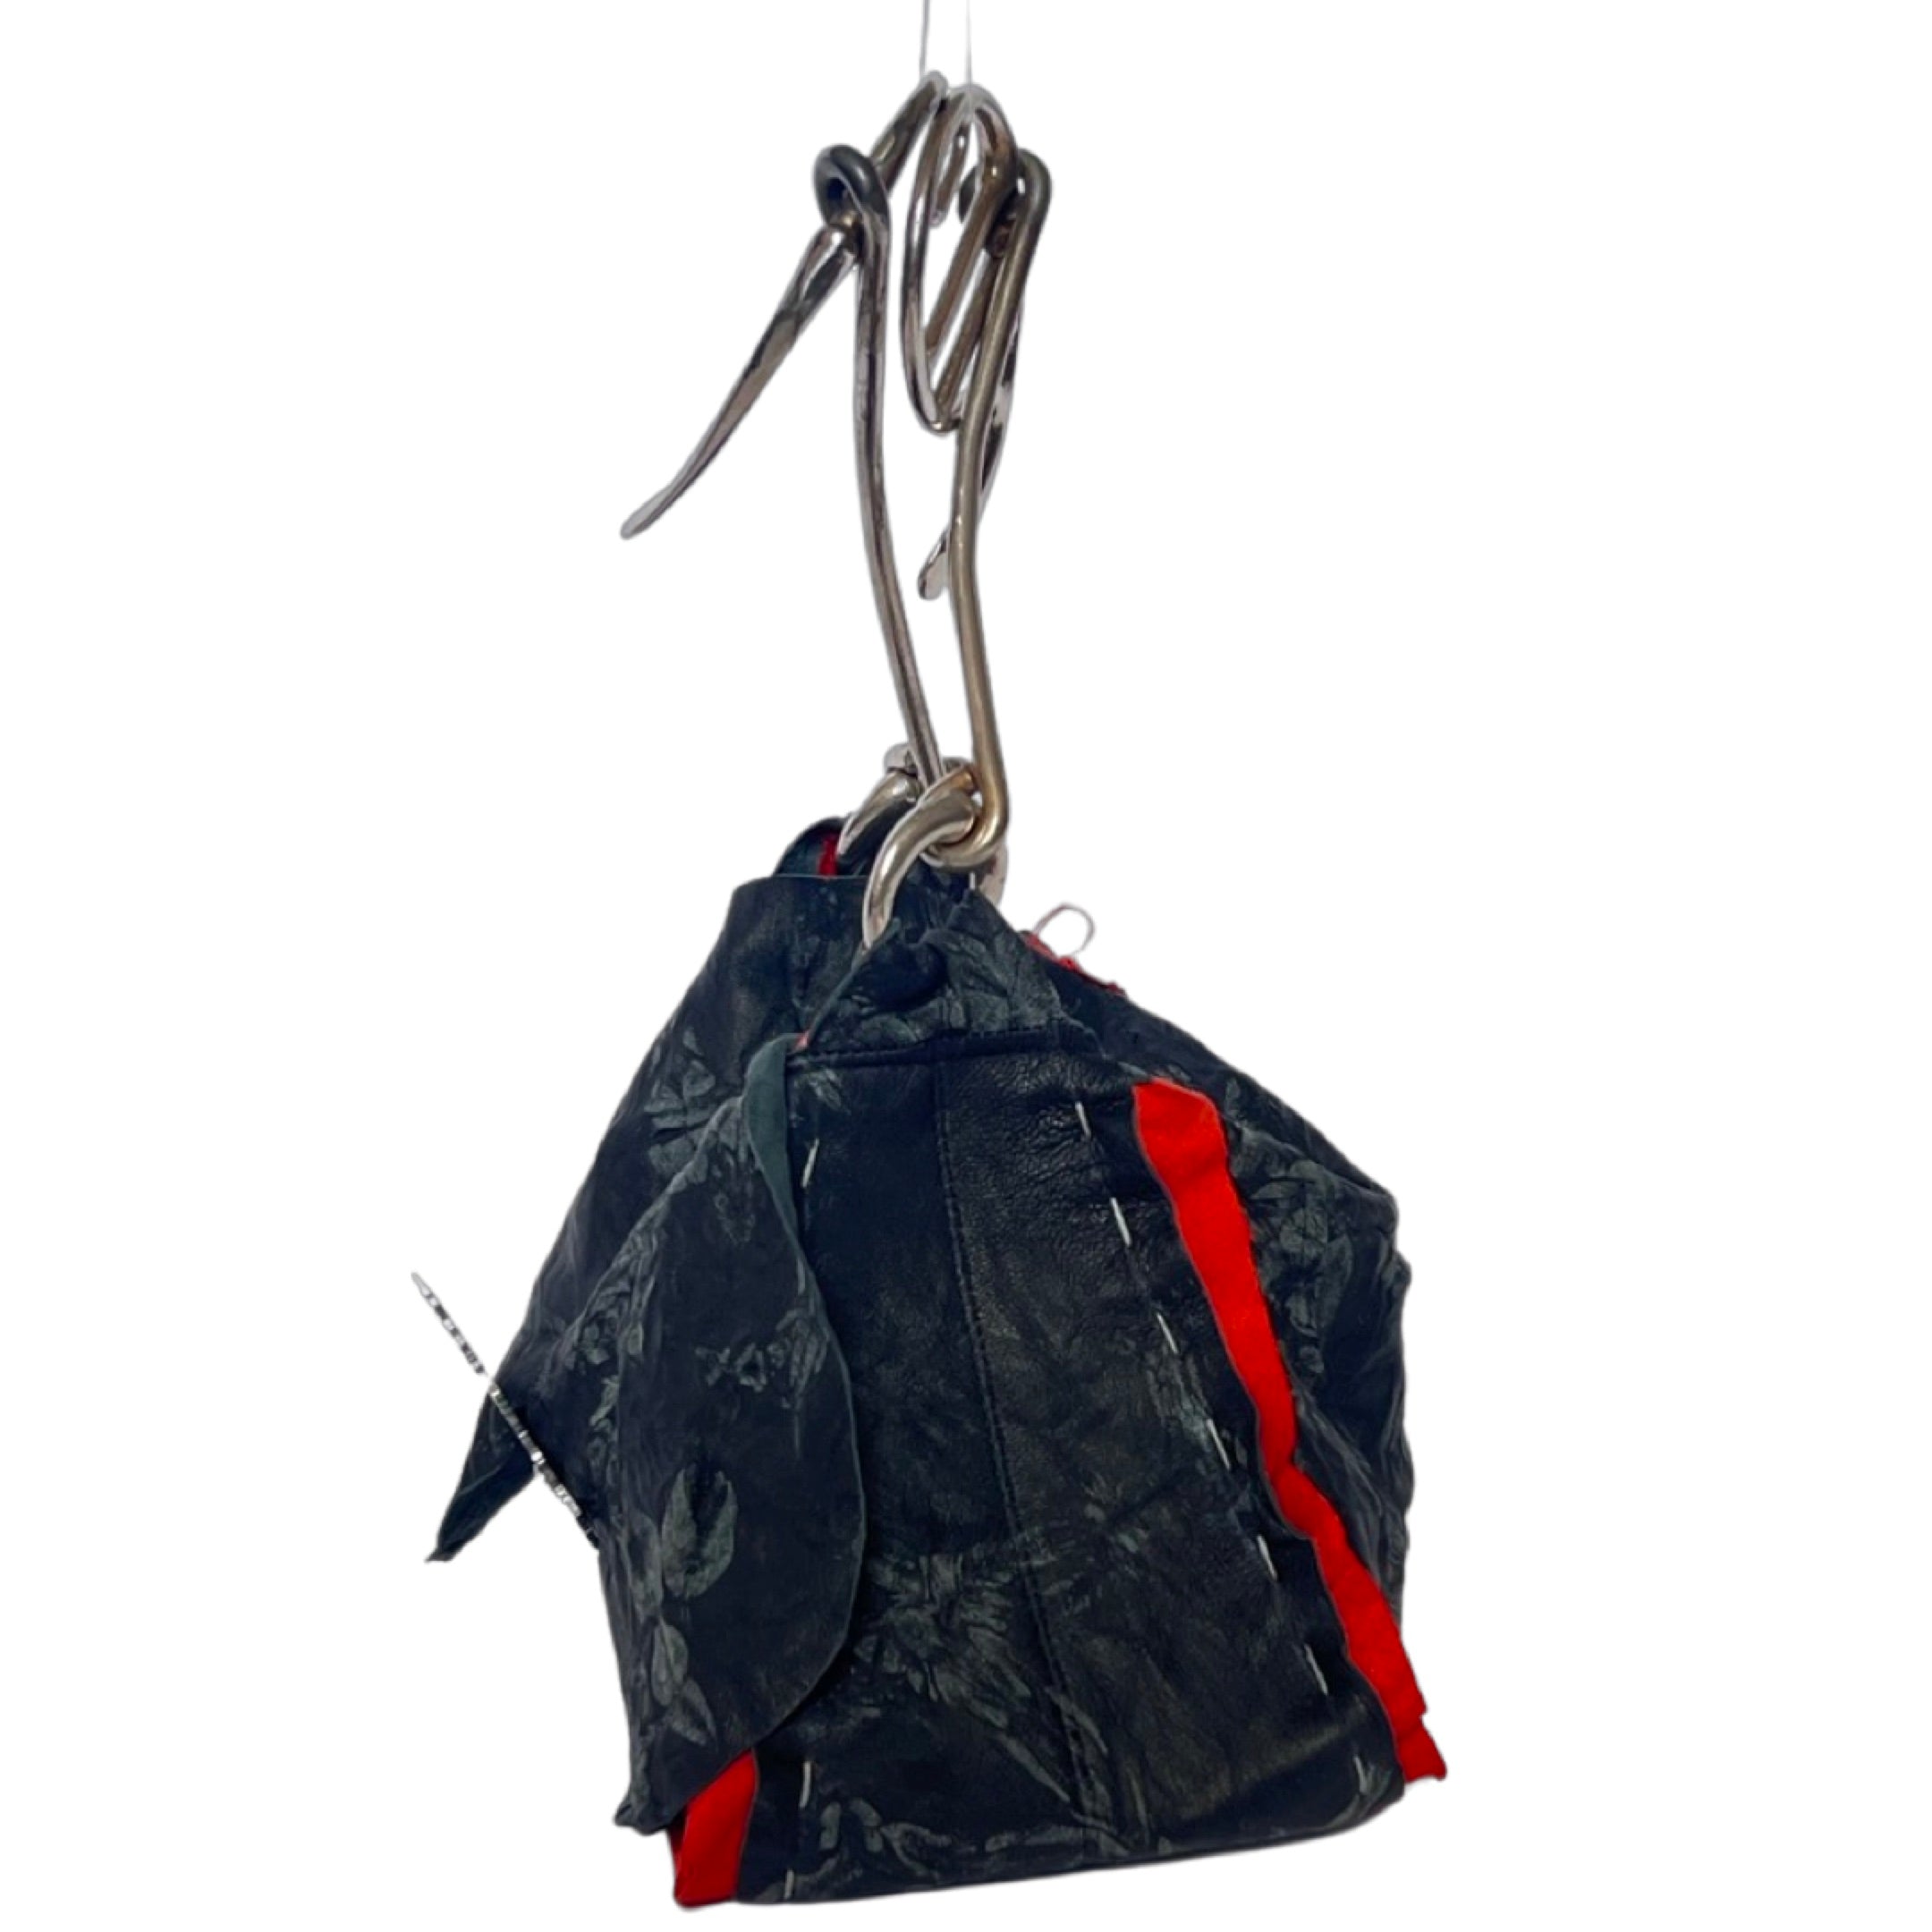 Manola's Bag in Tie Dye Black